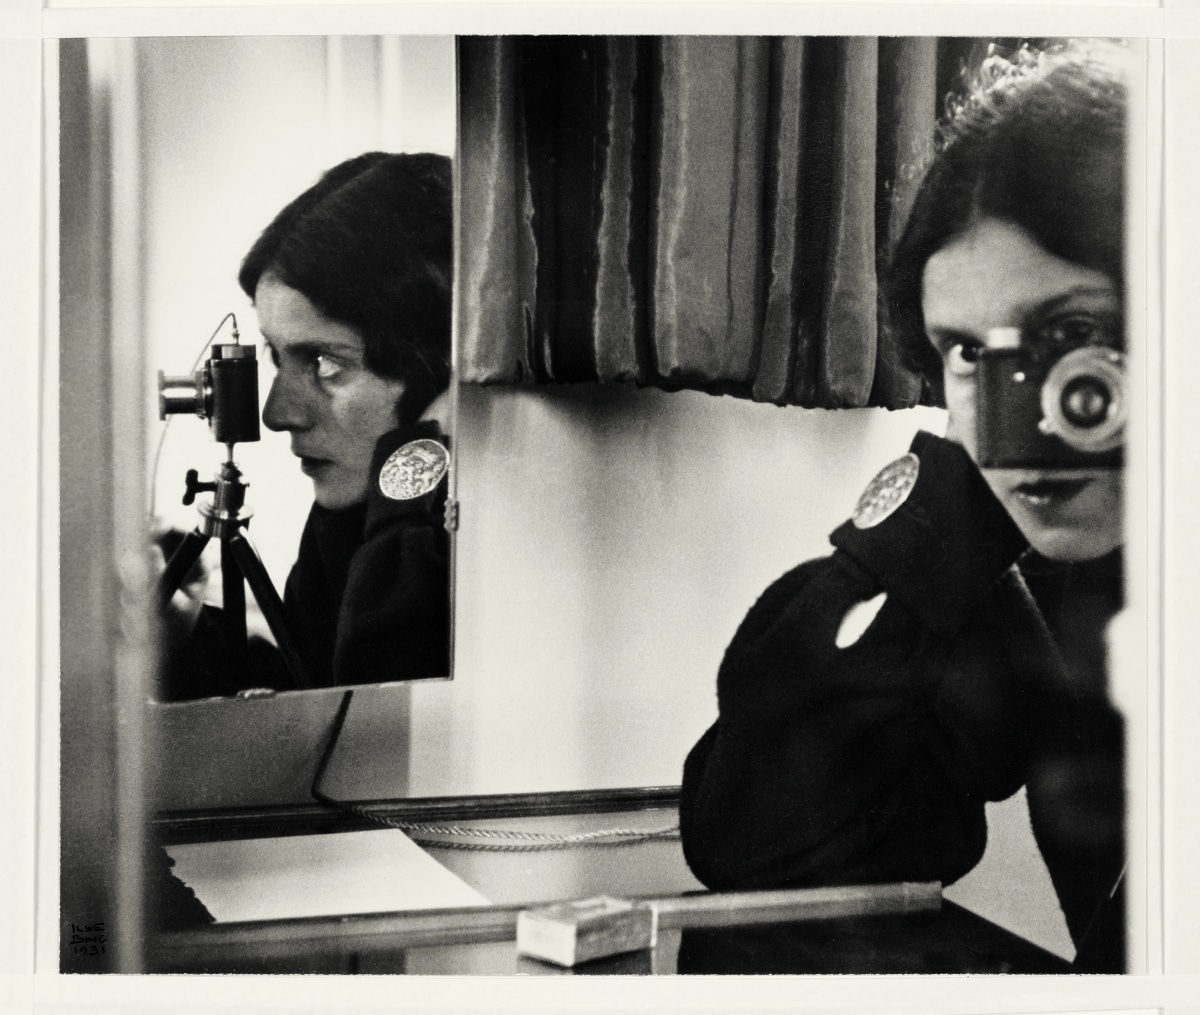 Ilse Bing. Autorretrato con Leica [Self-portrait with Leica], 1931. Colección de Michael Mattis y Judith Hochberg, Nueva York © Estate of Ilse Bing Photograph: Jeffrey Sturges.